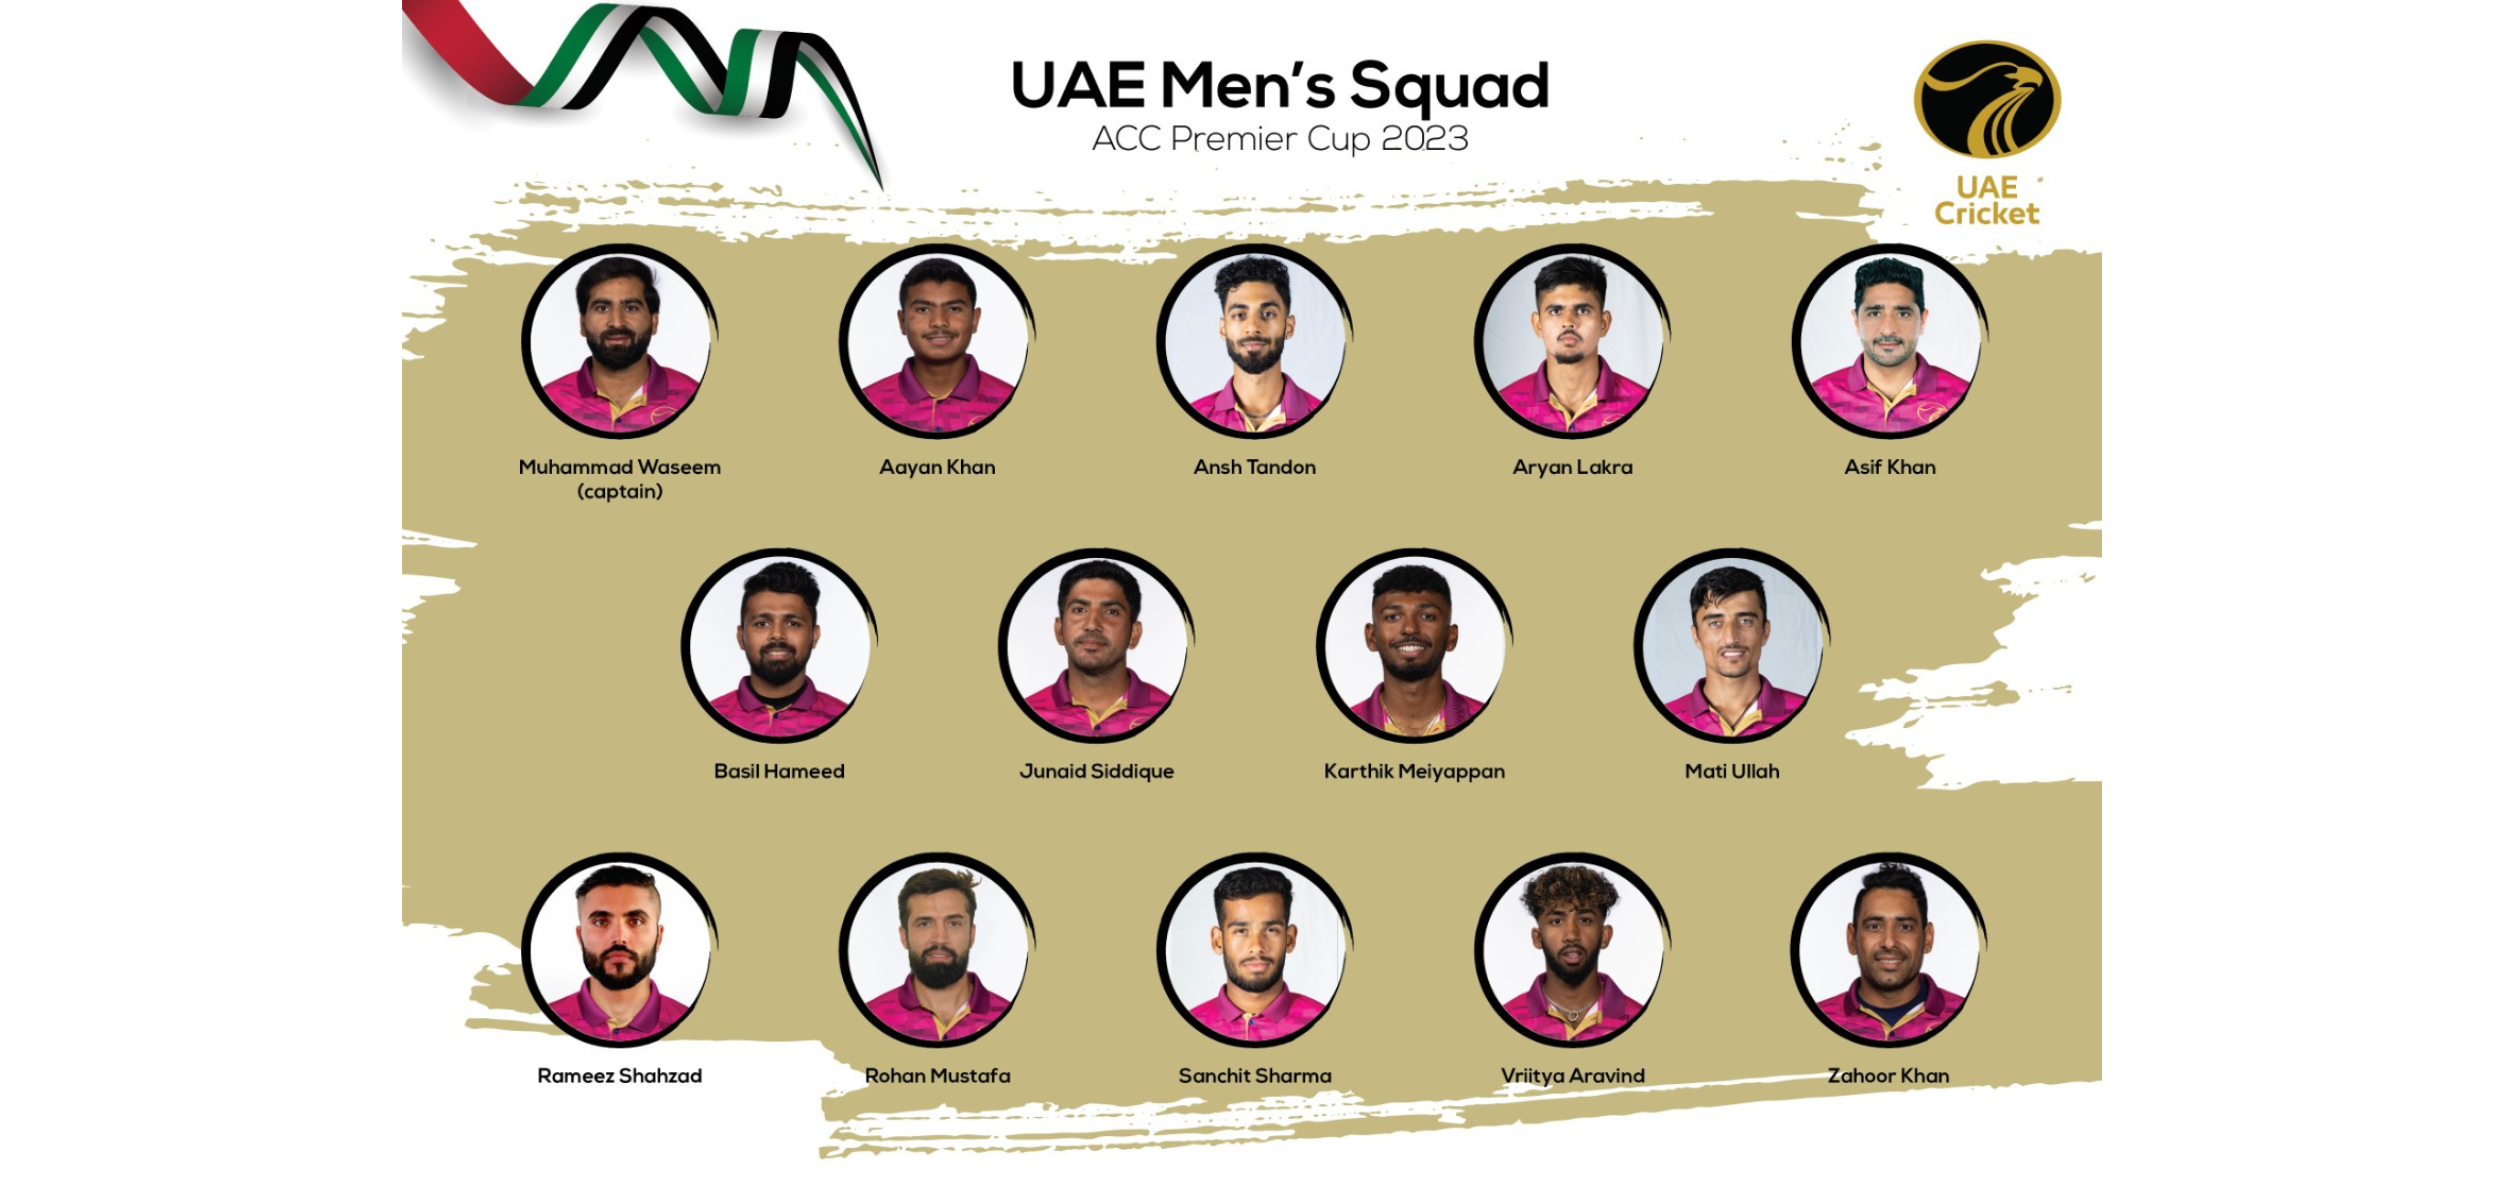 ECB UAE squad for ACC Premier Cup 2023 announced cricexec